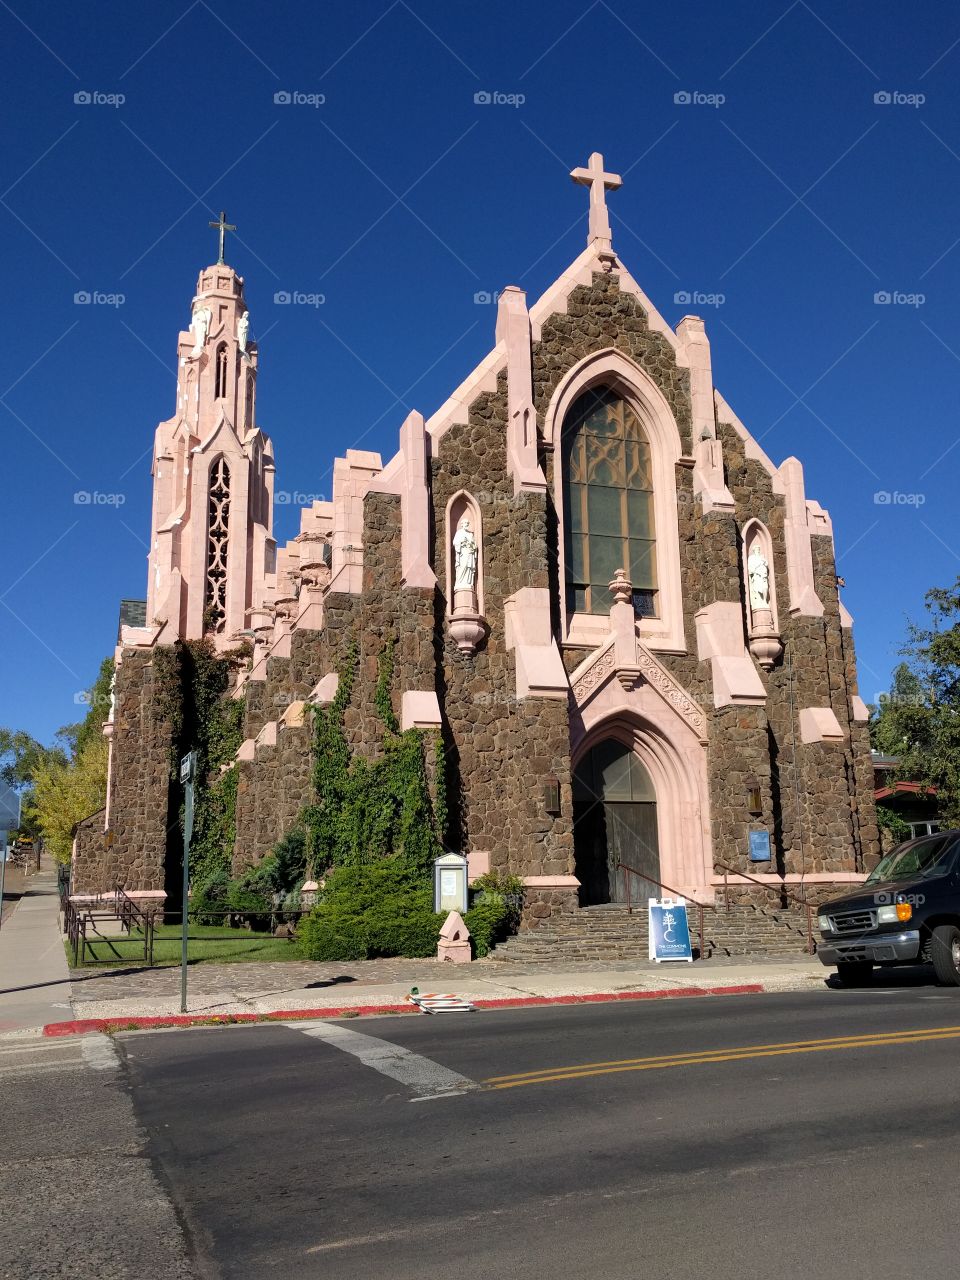 Church at Flagstaff, AZ